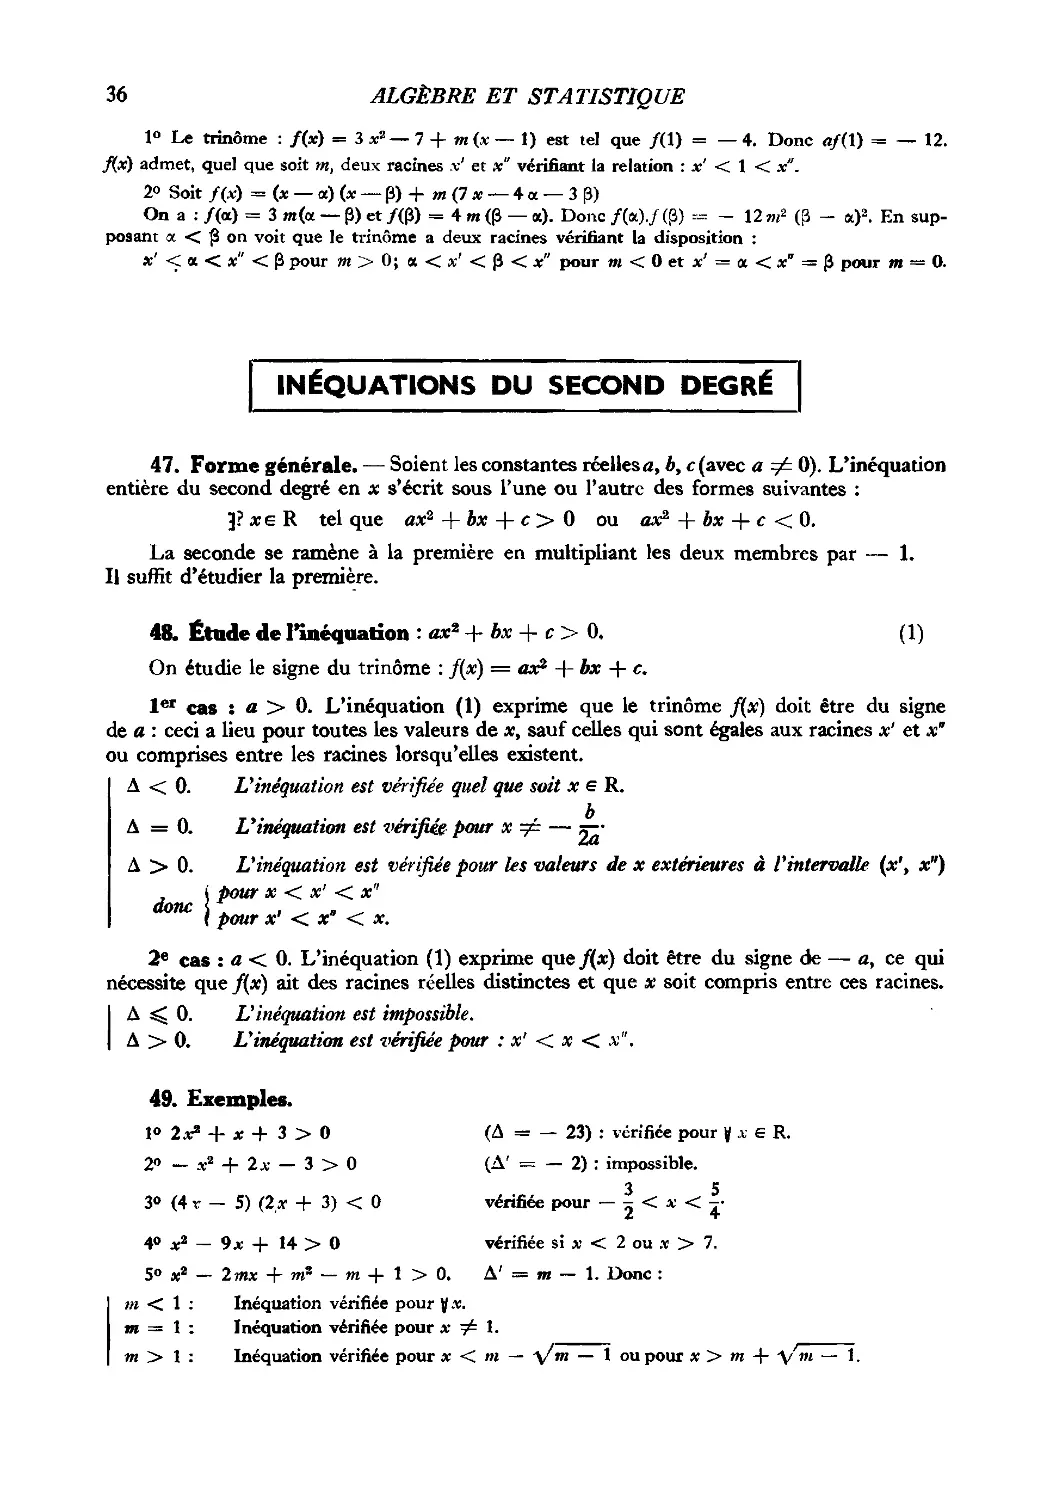 Inéquations du second degré
48. Étude de l’inéquation : ax² + bx + c > 0
49. Exemples